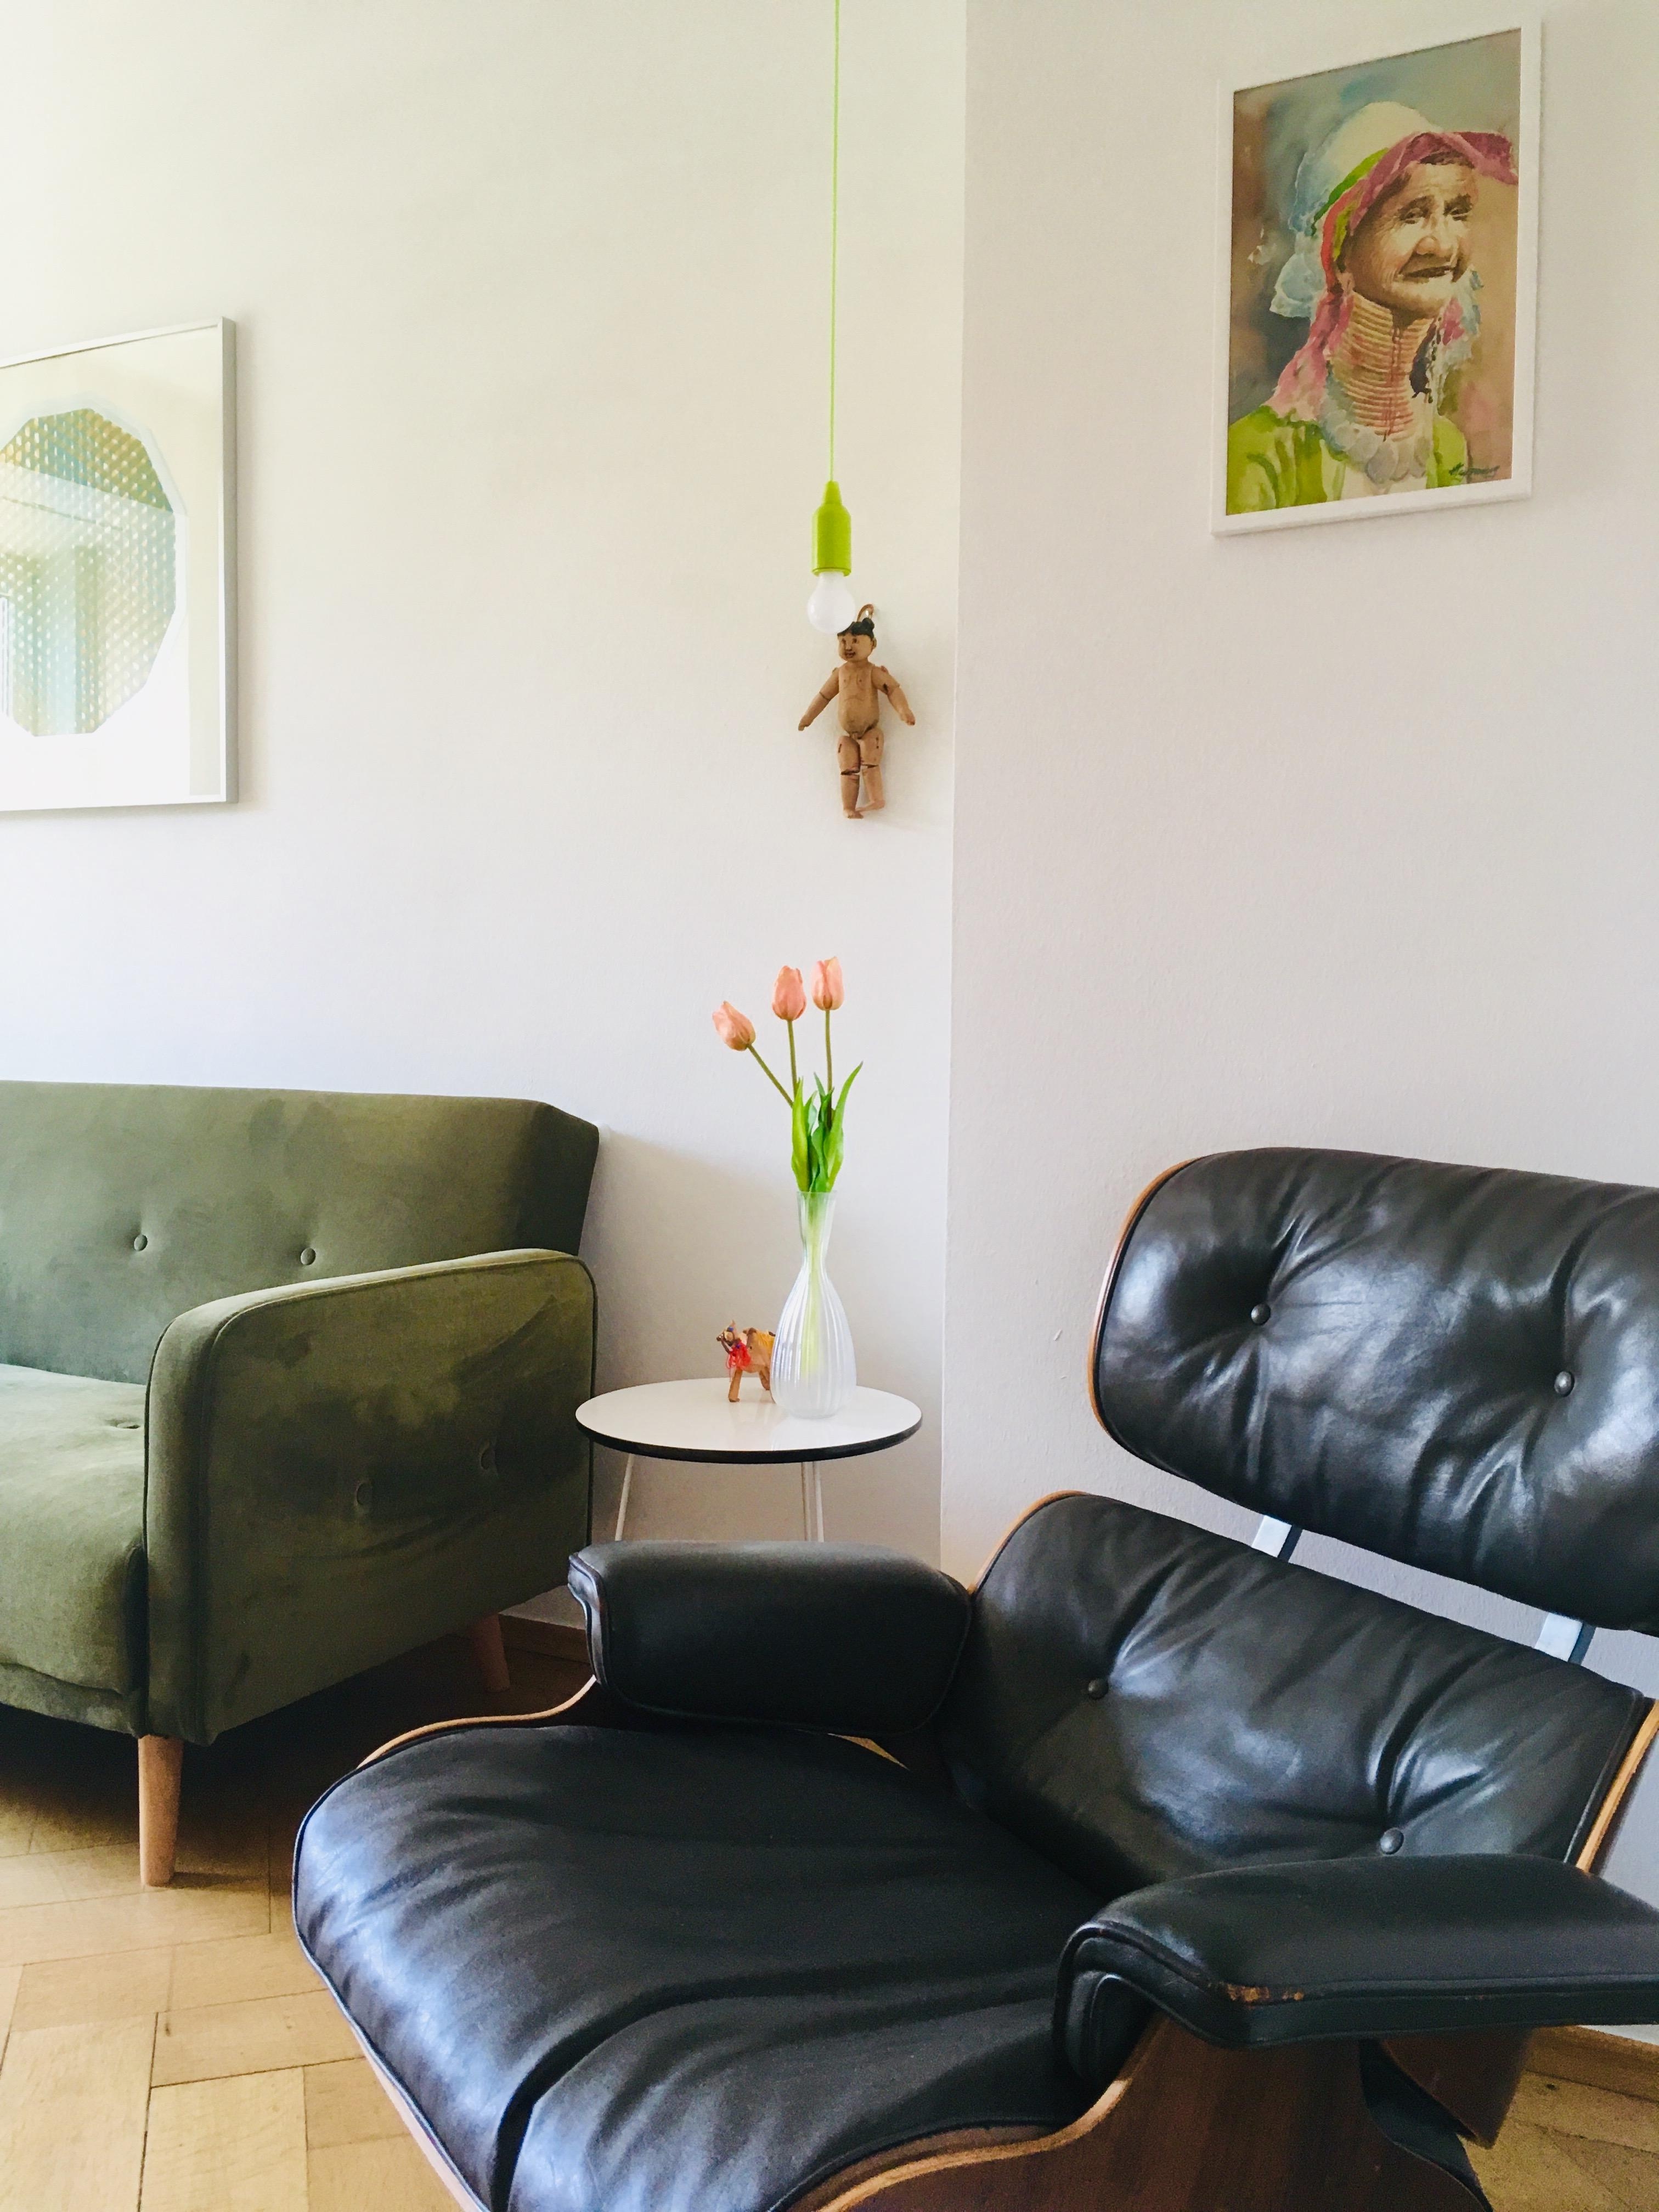 #livingchallenge #wohnzimmergestaltung #couch